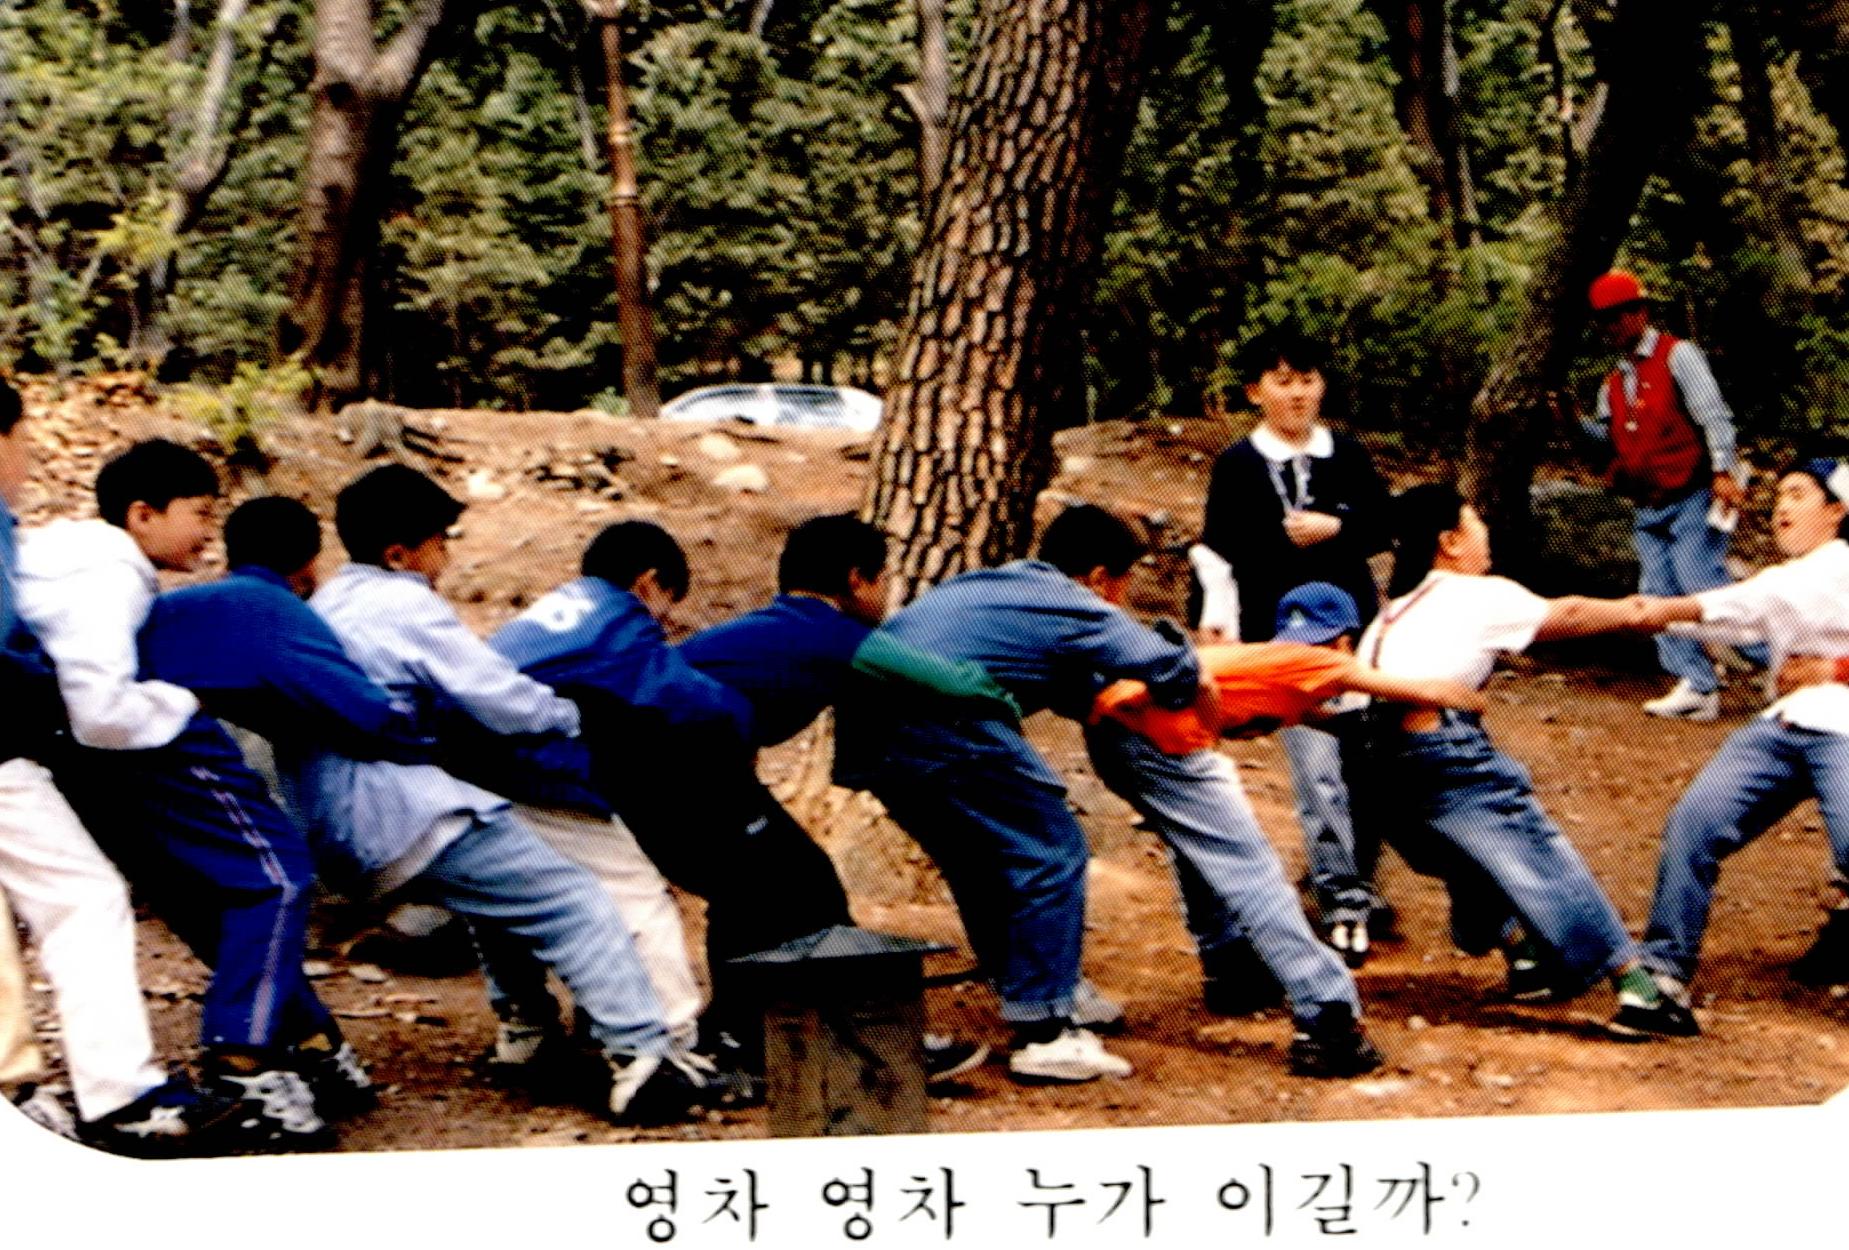 
															
															
																
																	경화초등학교 소풍 - 1997년 [1번째 이미지]
																
																
															
														